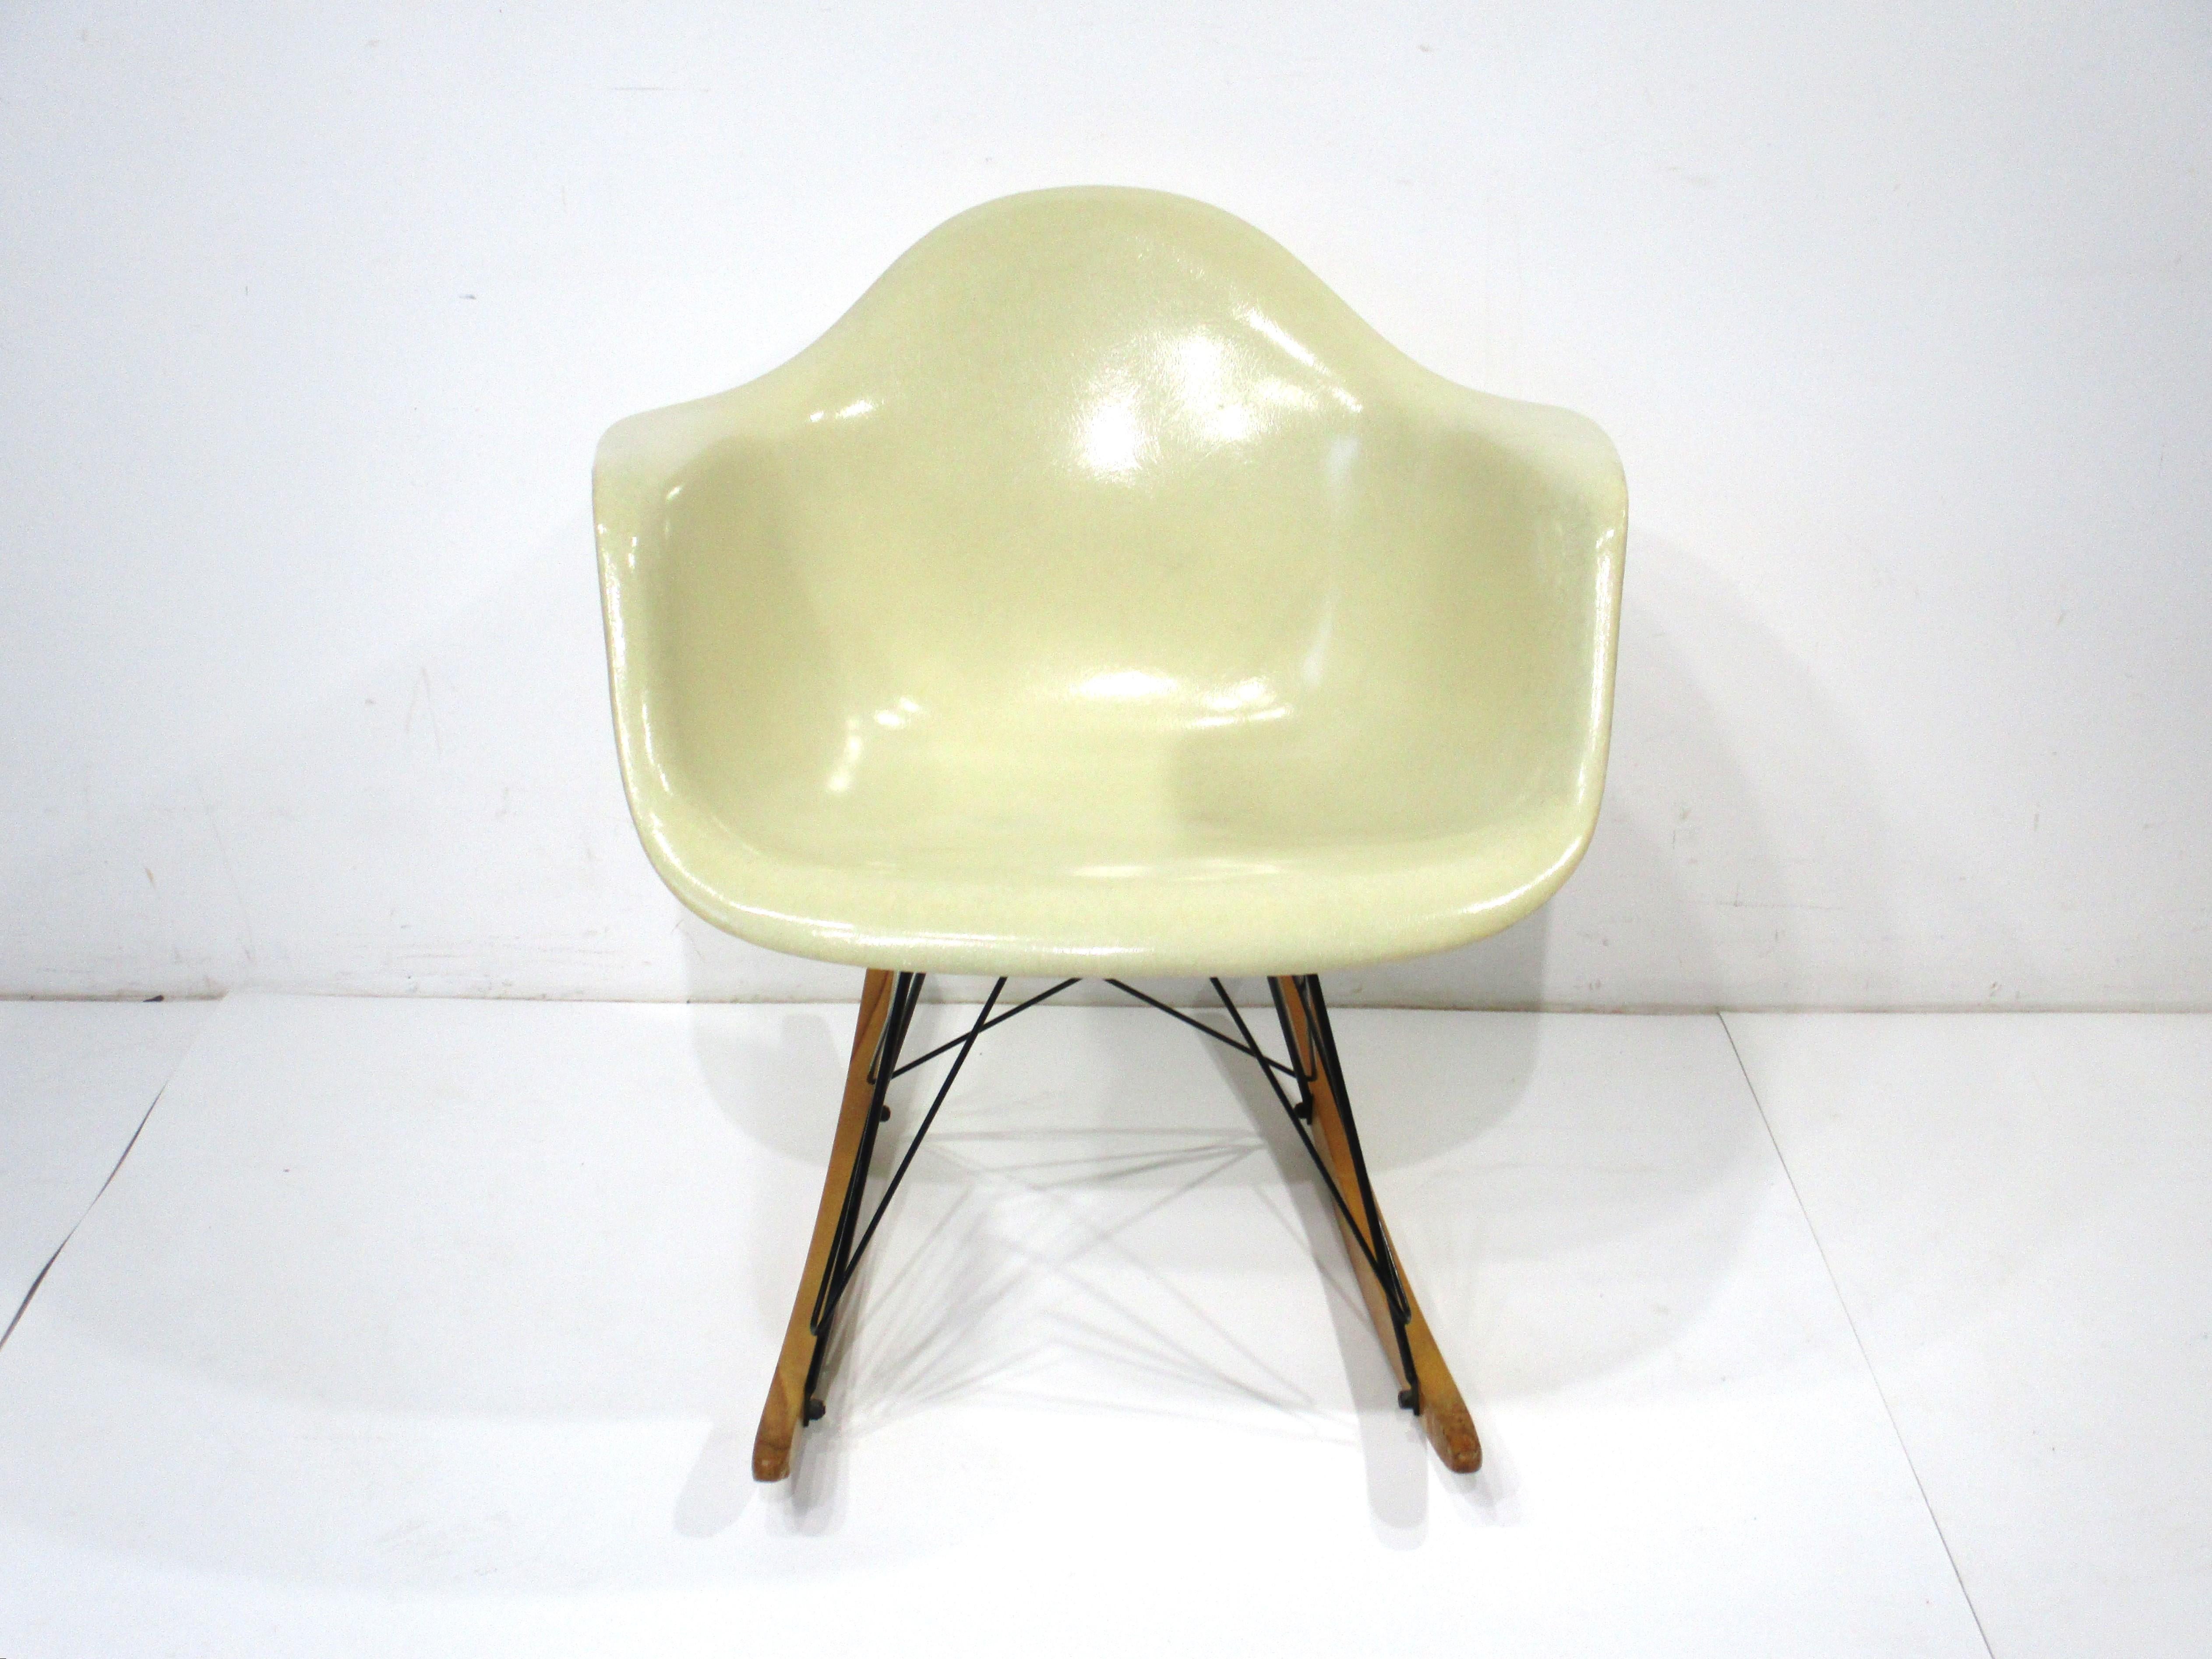 Eine sehr schöne ikonischen Mid Century entworfen geformt Fiberglas Schaukel Arm Schale Stuhl in einem Pergament Farbe. Der satinschwarze Sockel besteht aus Metallstäben mit Kufen aus Birkenholz, die dem Stück einen tollen Kontrast verleihen.